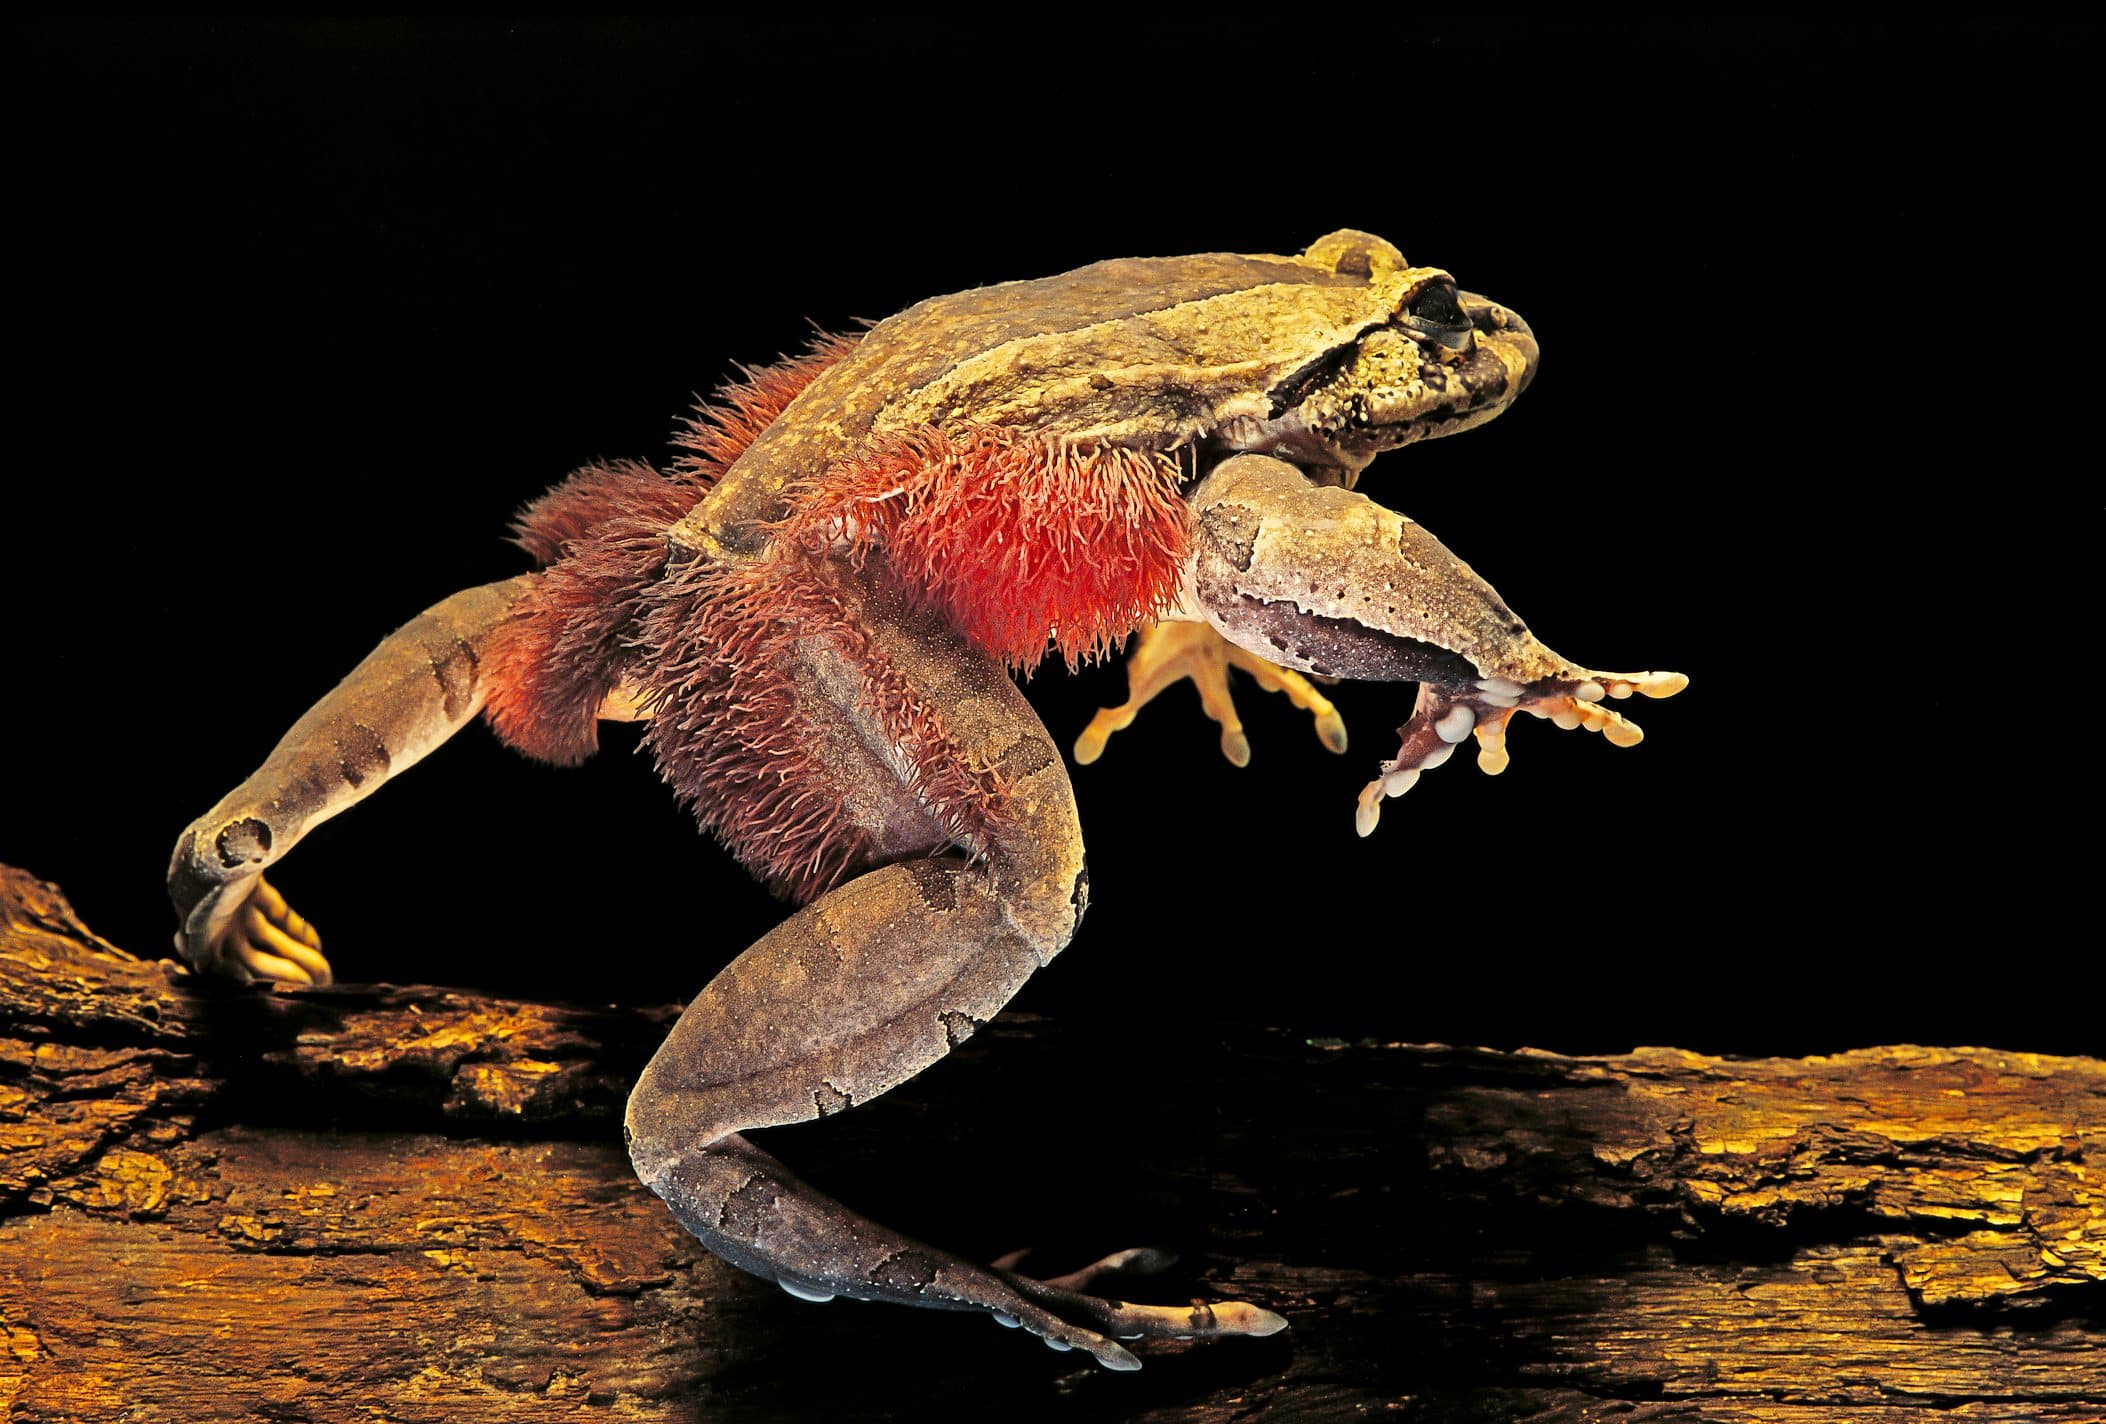  Rencontrez la grenouille Wolverine : une défense inhabituelle qui consiste à briser ses propres os !